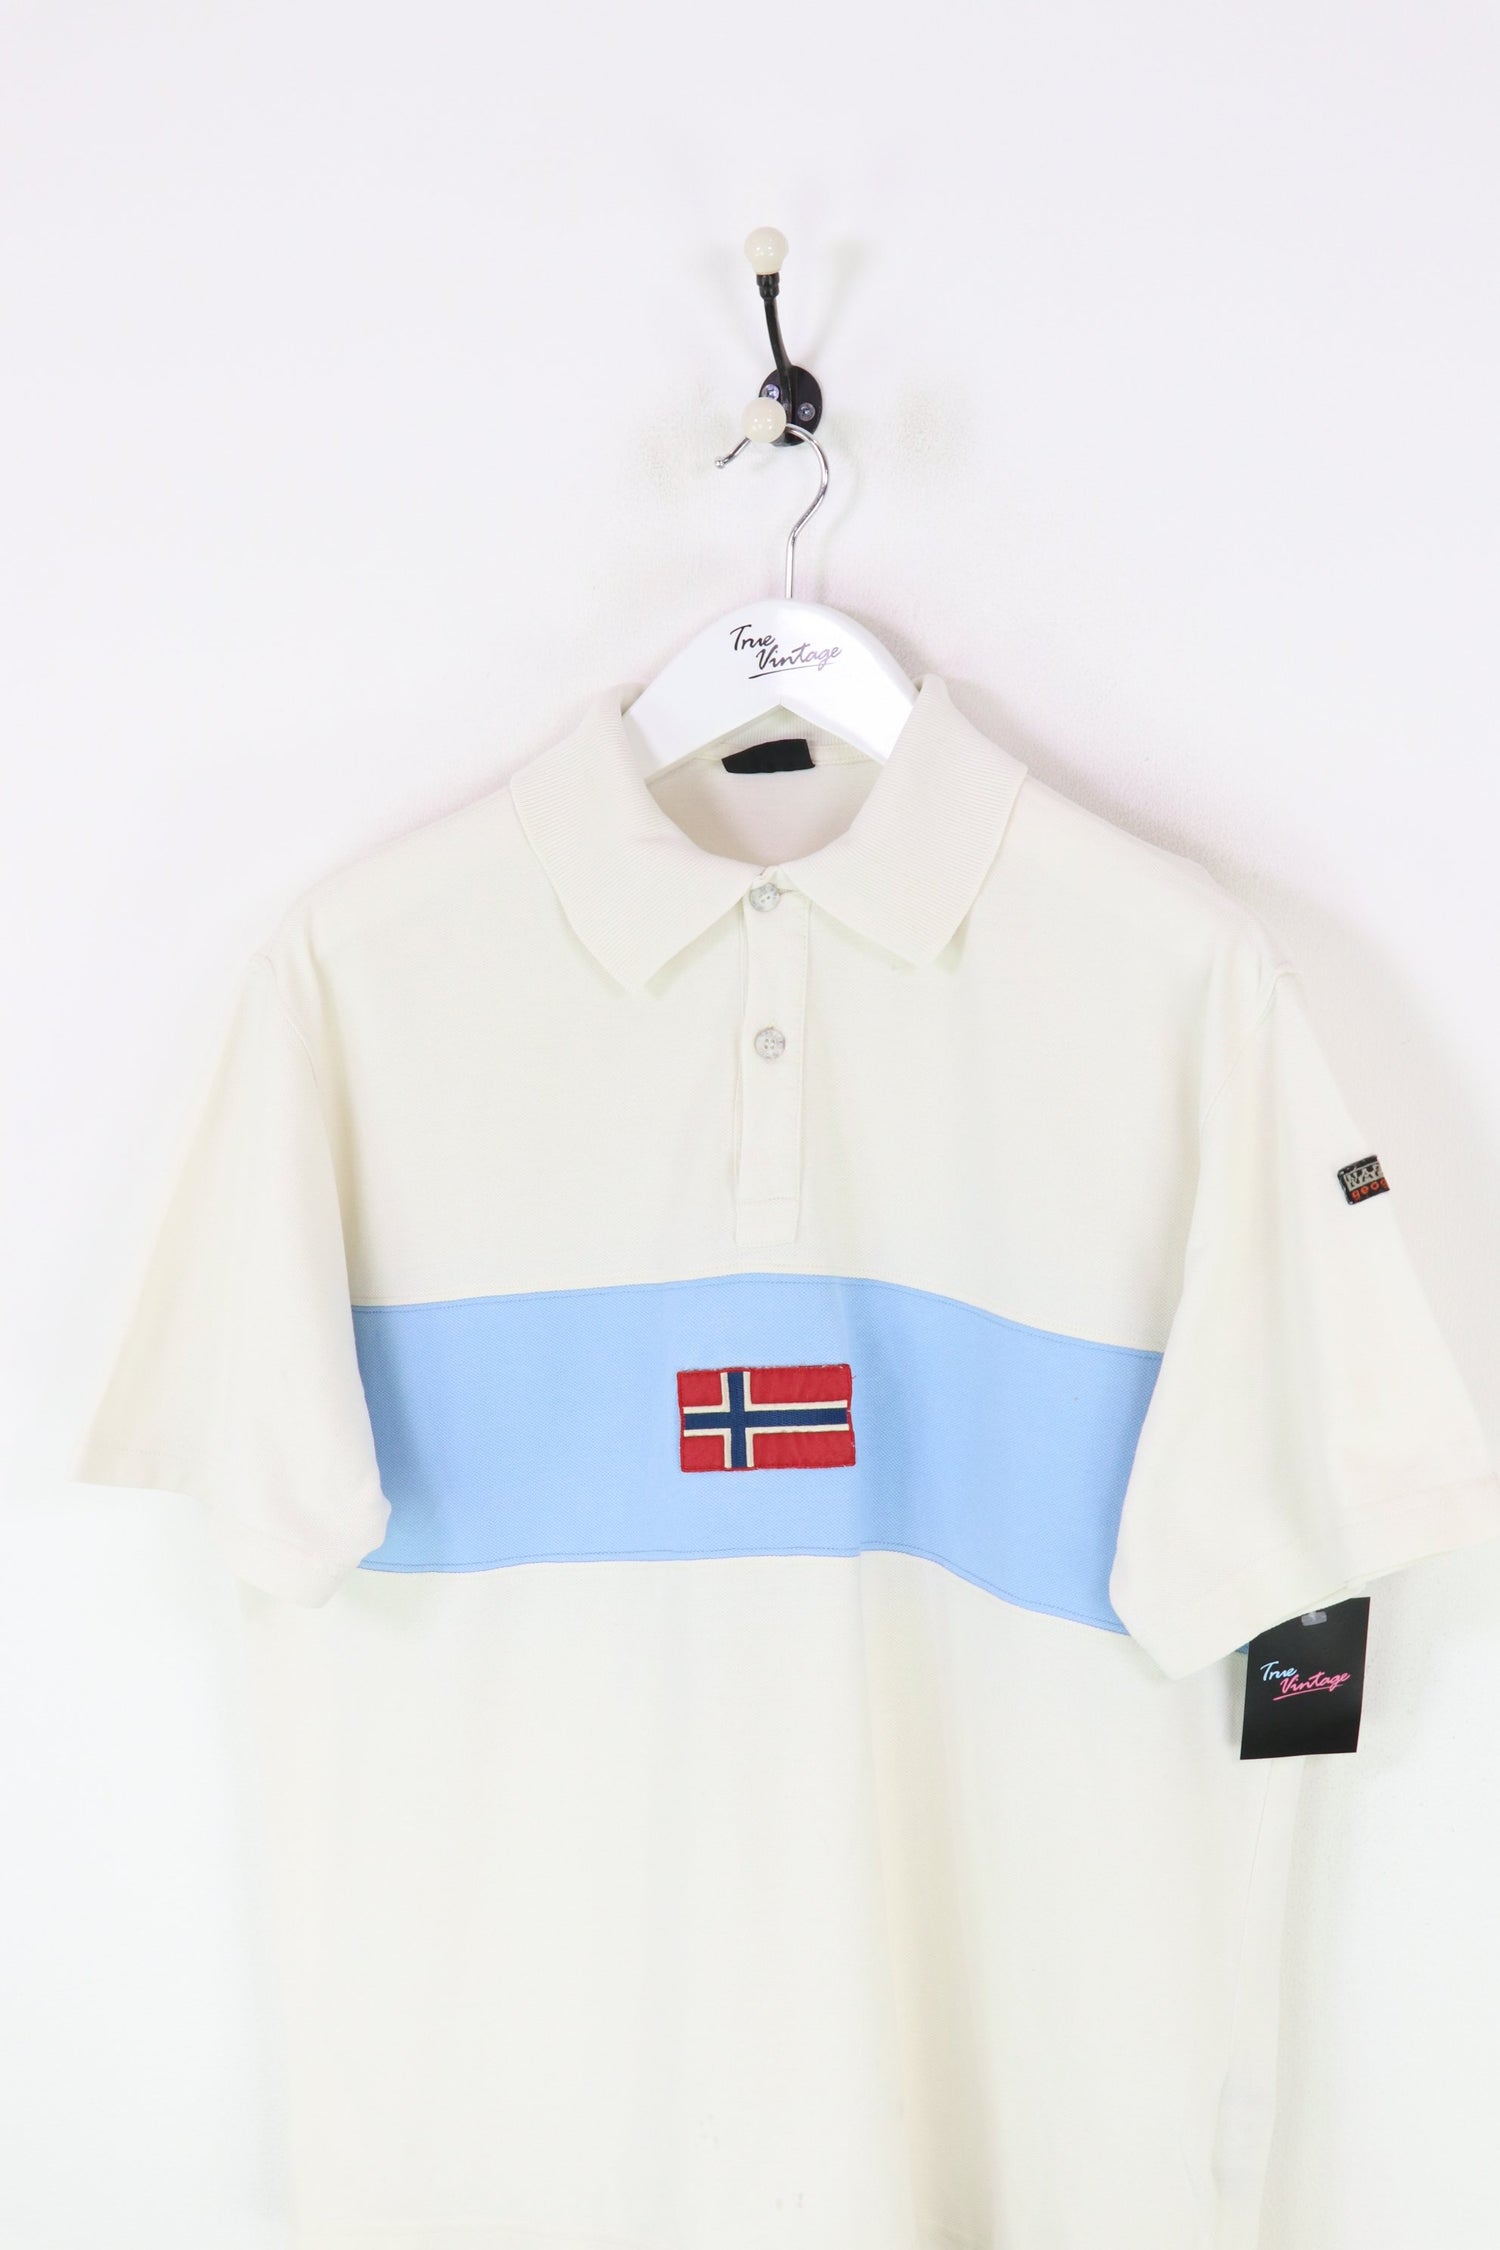 Napapijri Polo Shirt White/Blue Medium